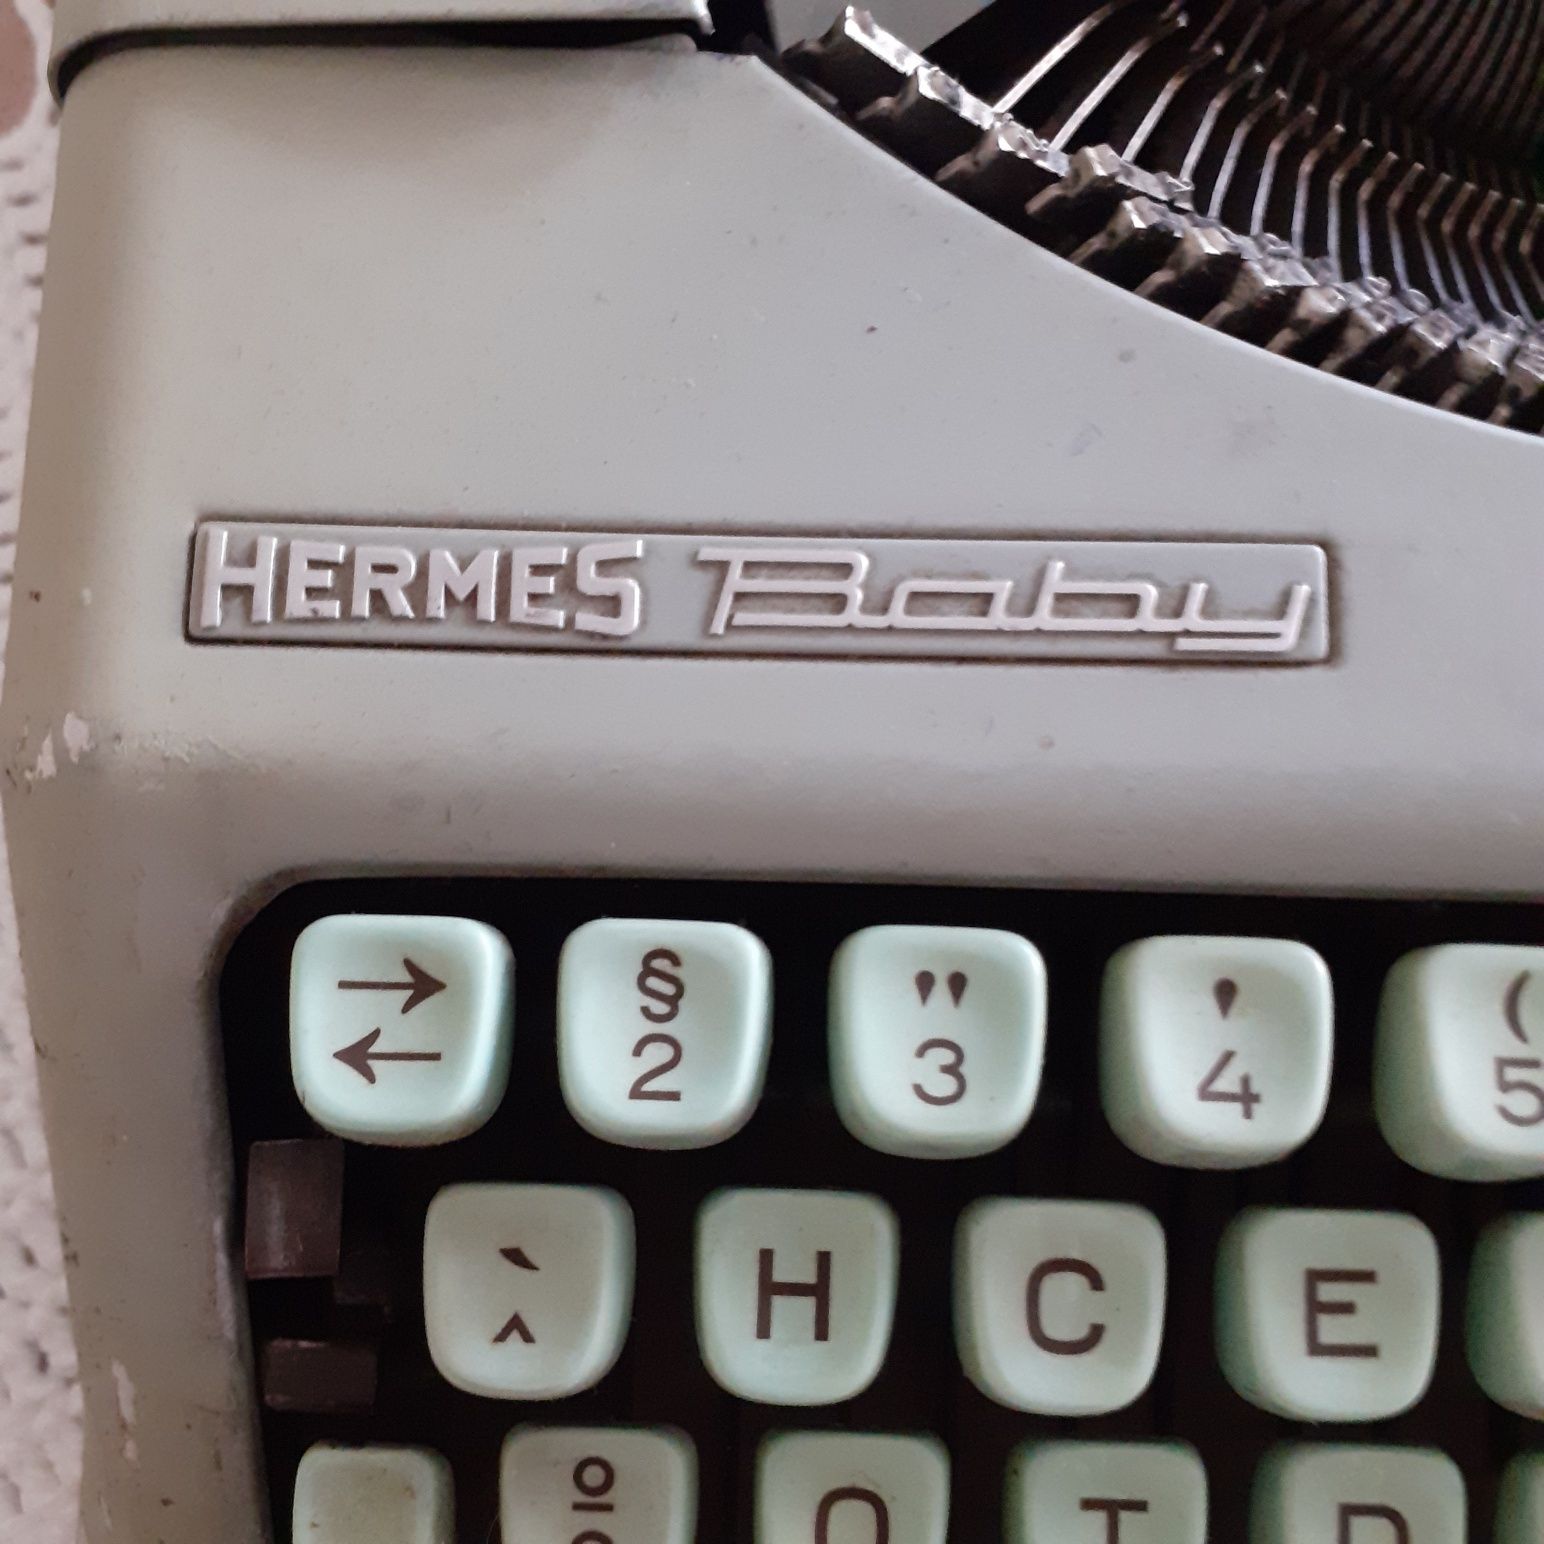 Máquina de escrever portátil Hermes baby 
A funcionar,